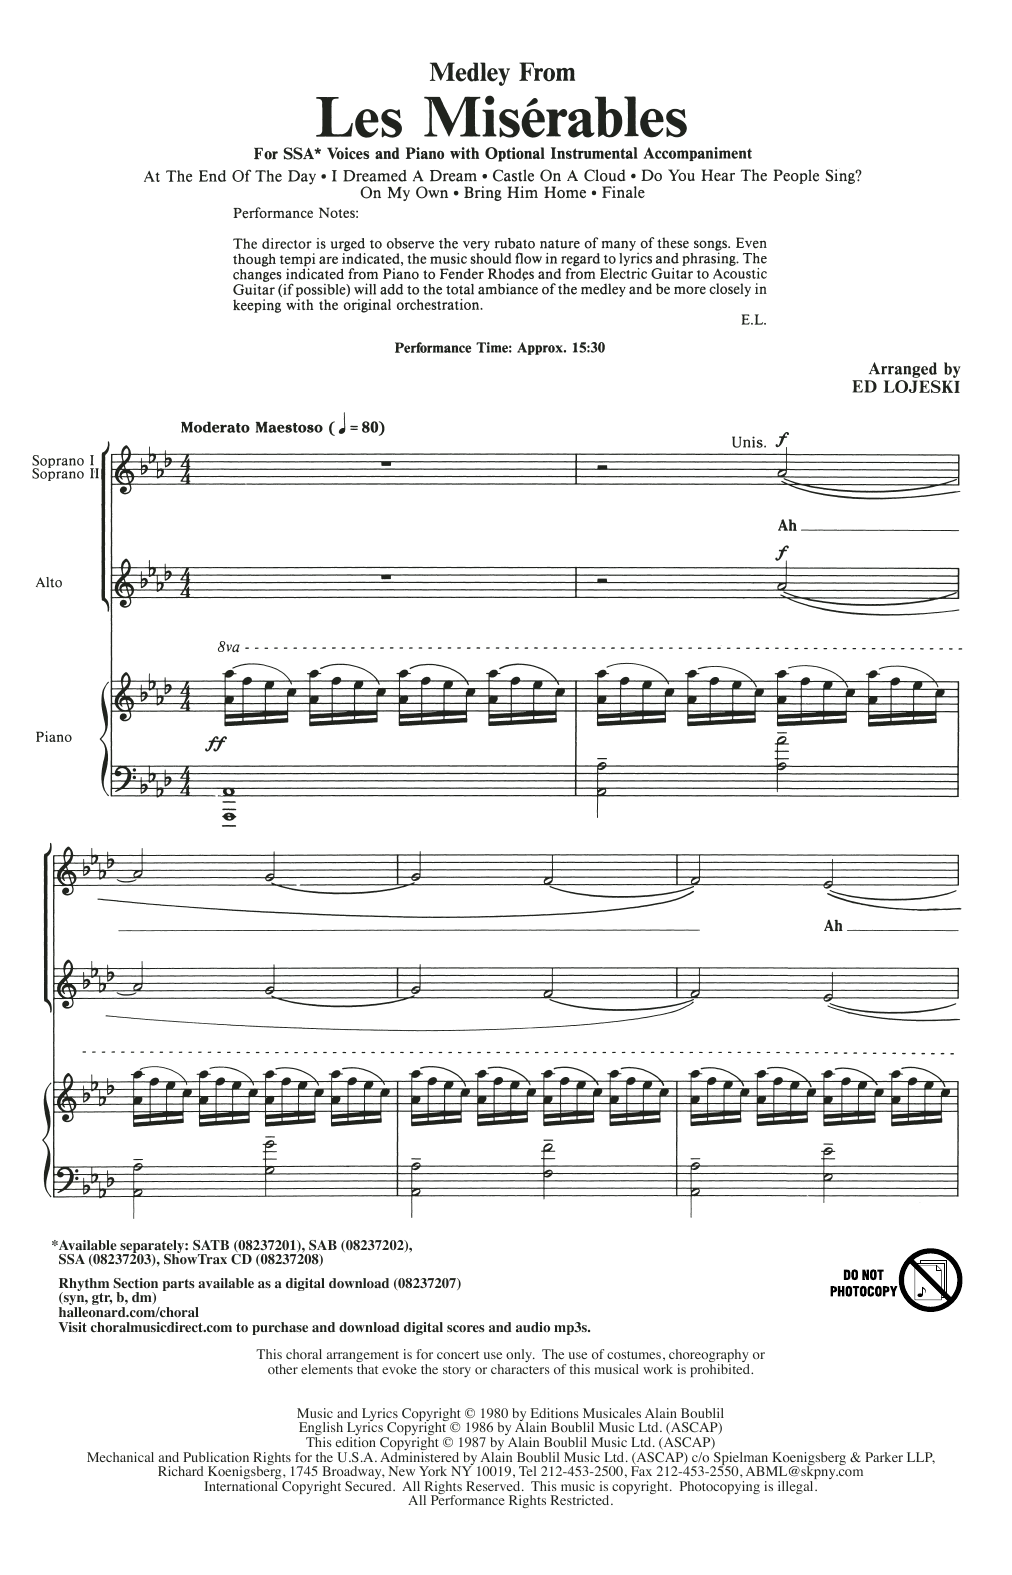 Boublil and Schonberg Les Miserables (Choral Medley) (arr. Ed Lojeski) Sheet Music Notes & Chords for SAB - Download or Print PDF